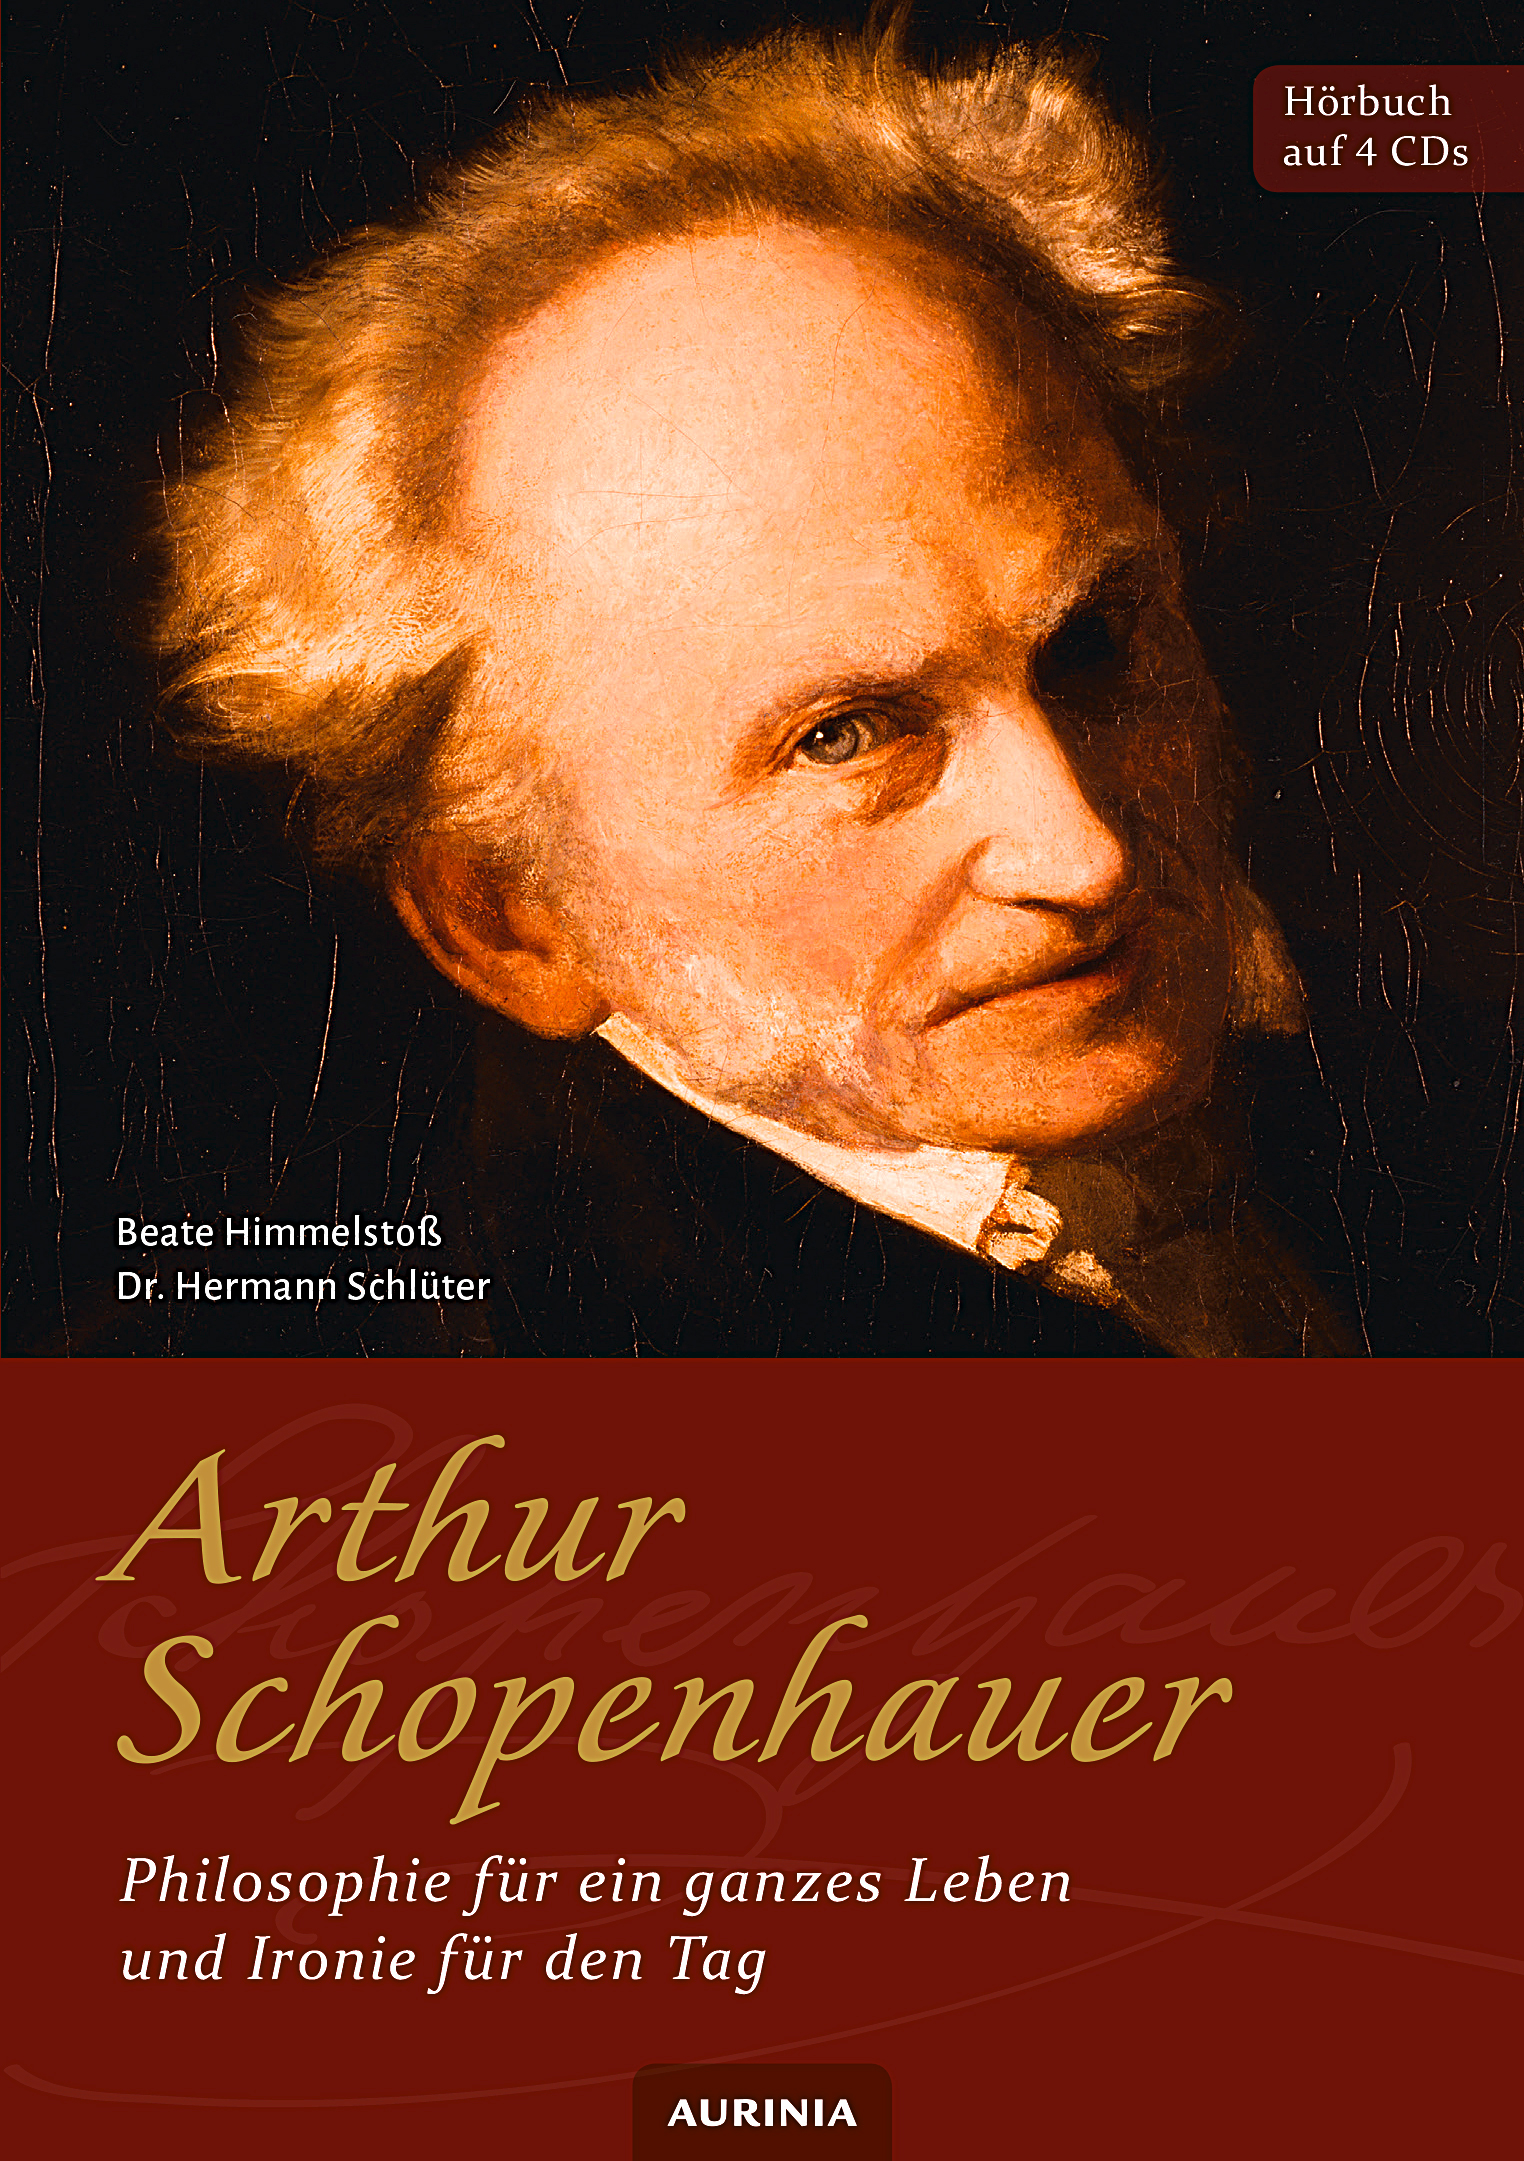 Arthur Schopenhauer - Philosophie für ein ganzes Leben und Ironie für den Tag